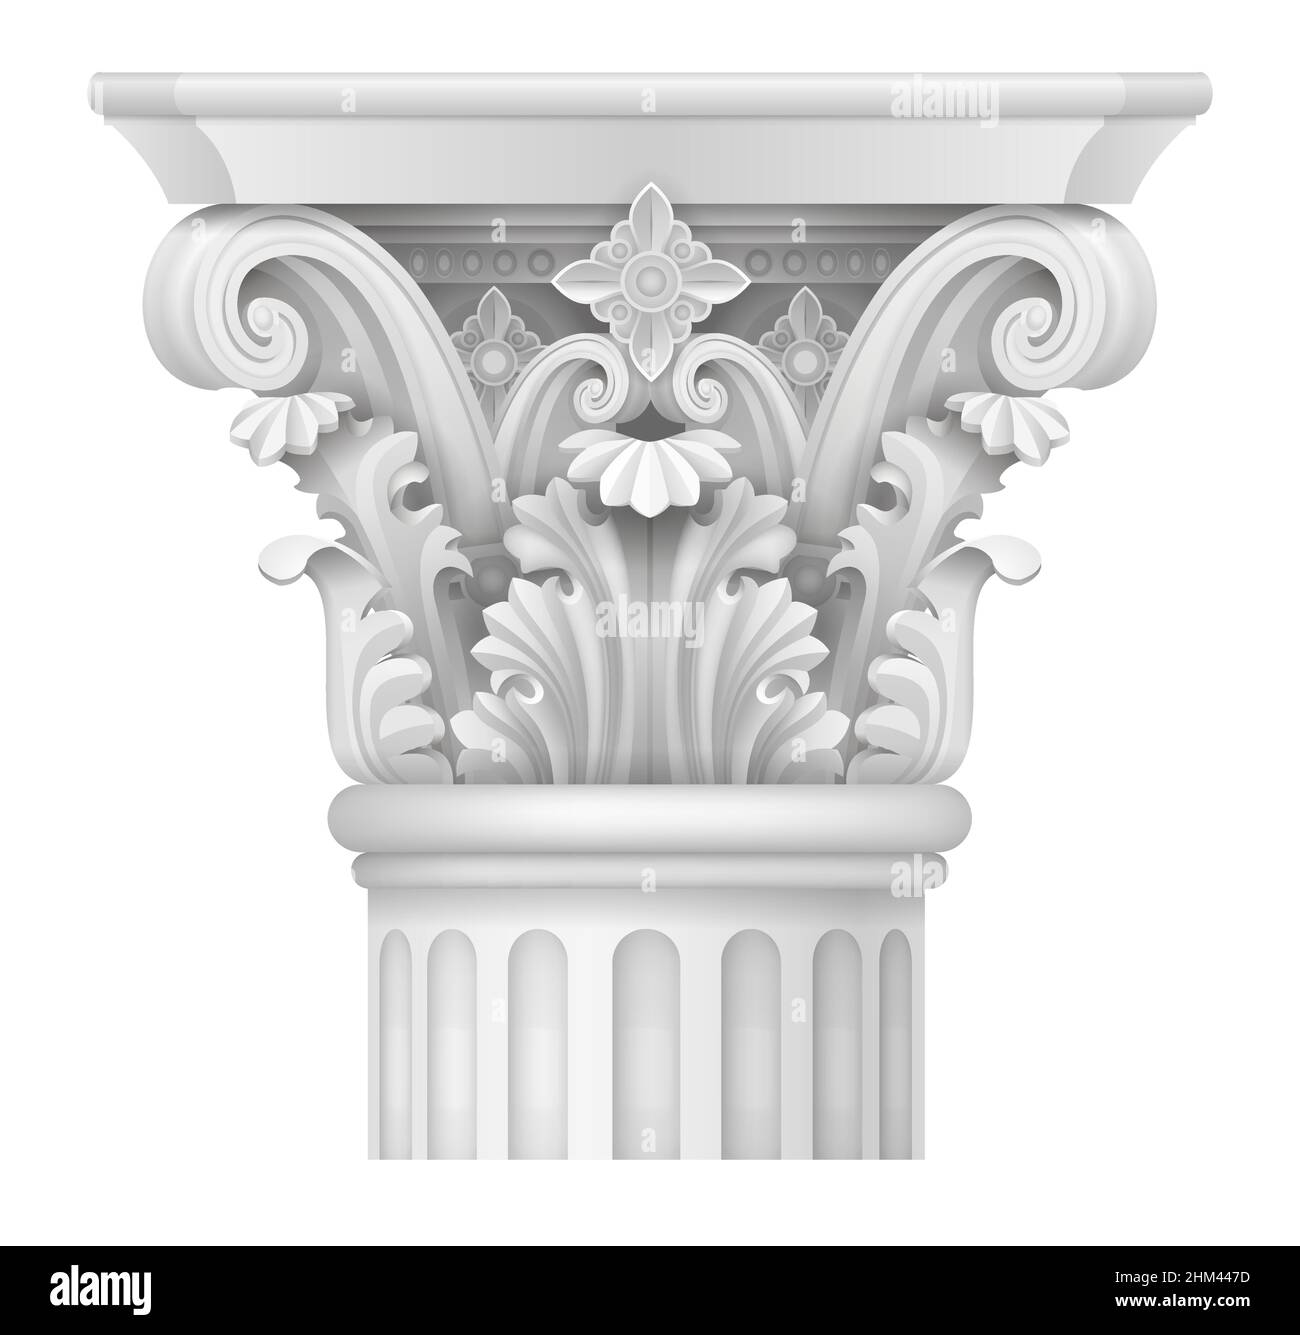 Capital Blanco de la Columna Corintia. Soporte arquitectónico clásico. Gráficos vectoriales Ilustración del Vector